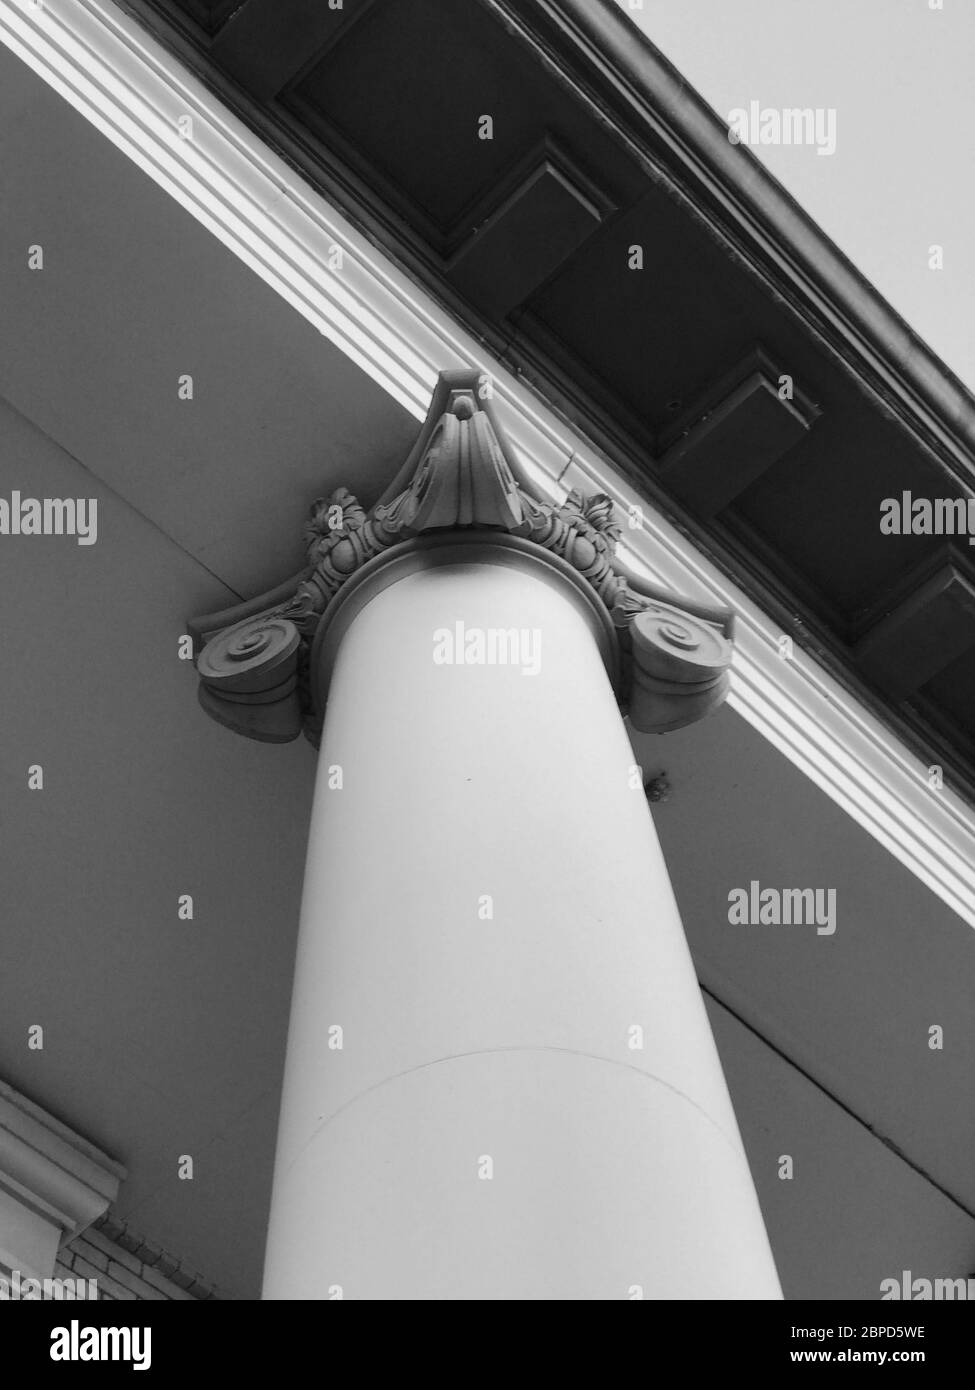 Supporto a colonna ionica per edifici architettonici. Immagine fotografica Foto Stock